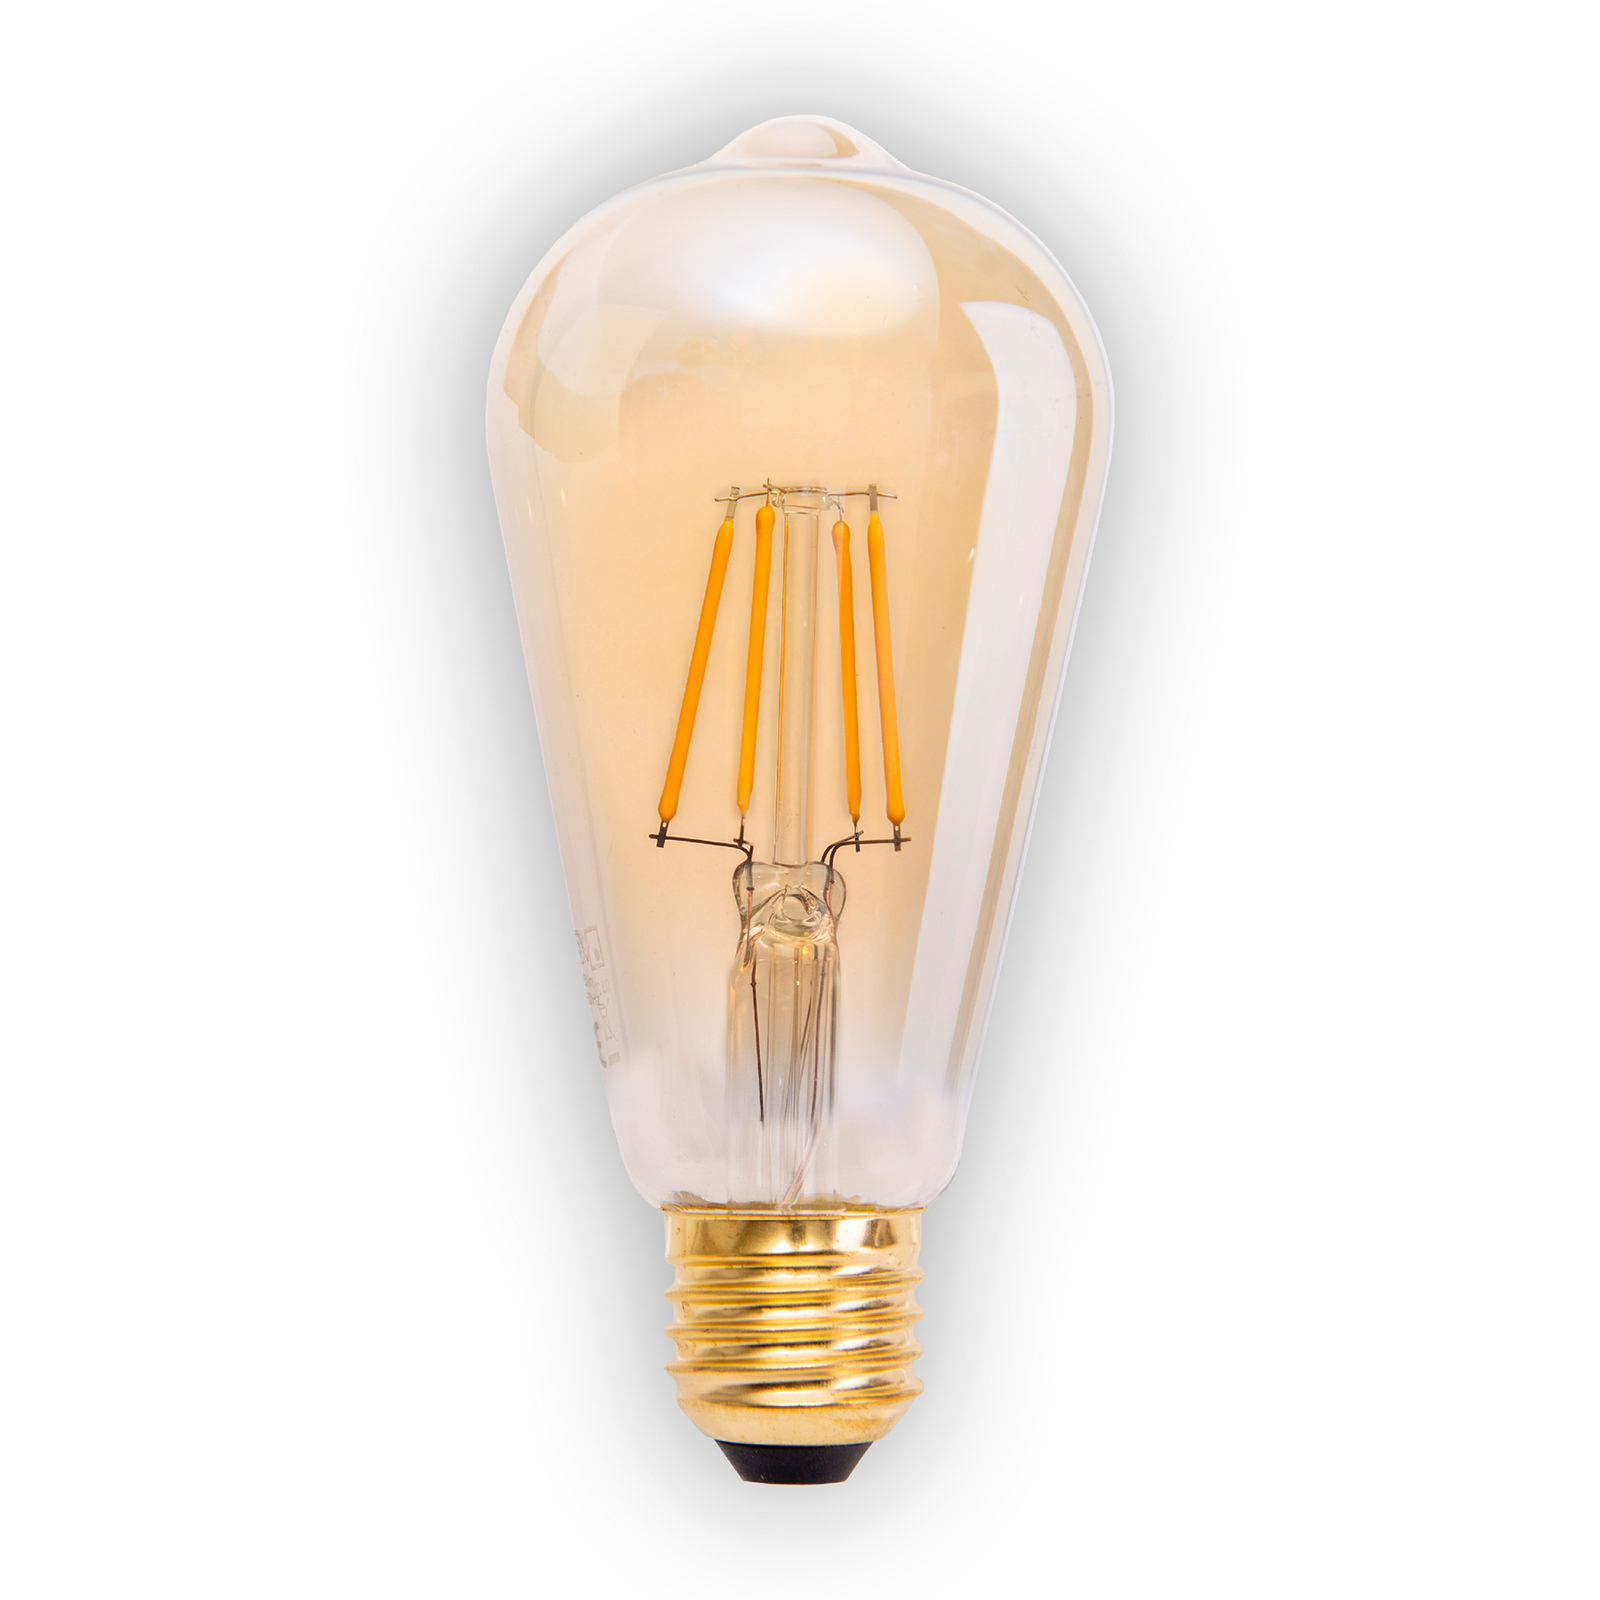 LED lamp E27 4W 320lm warmwit dimbaar per 4-set